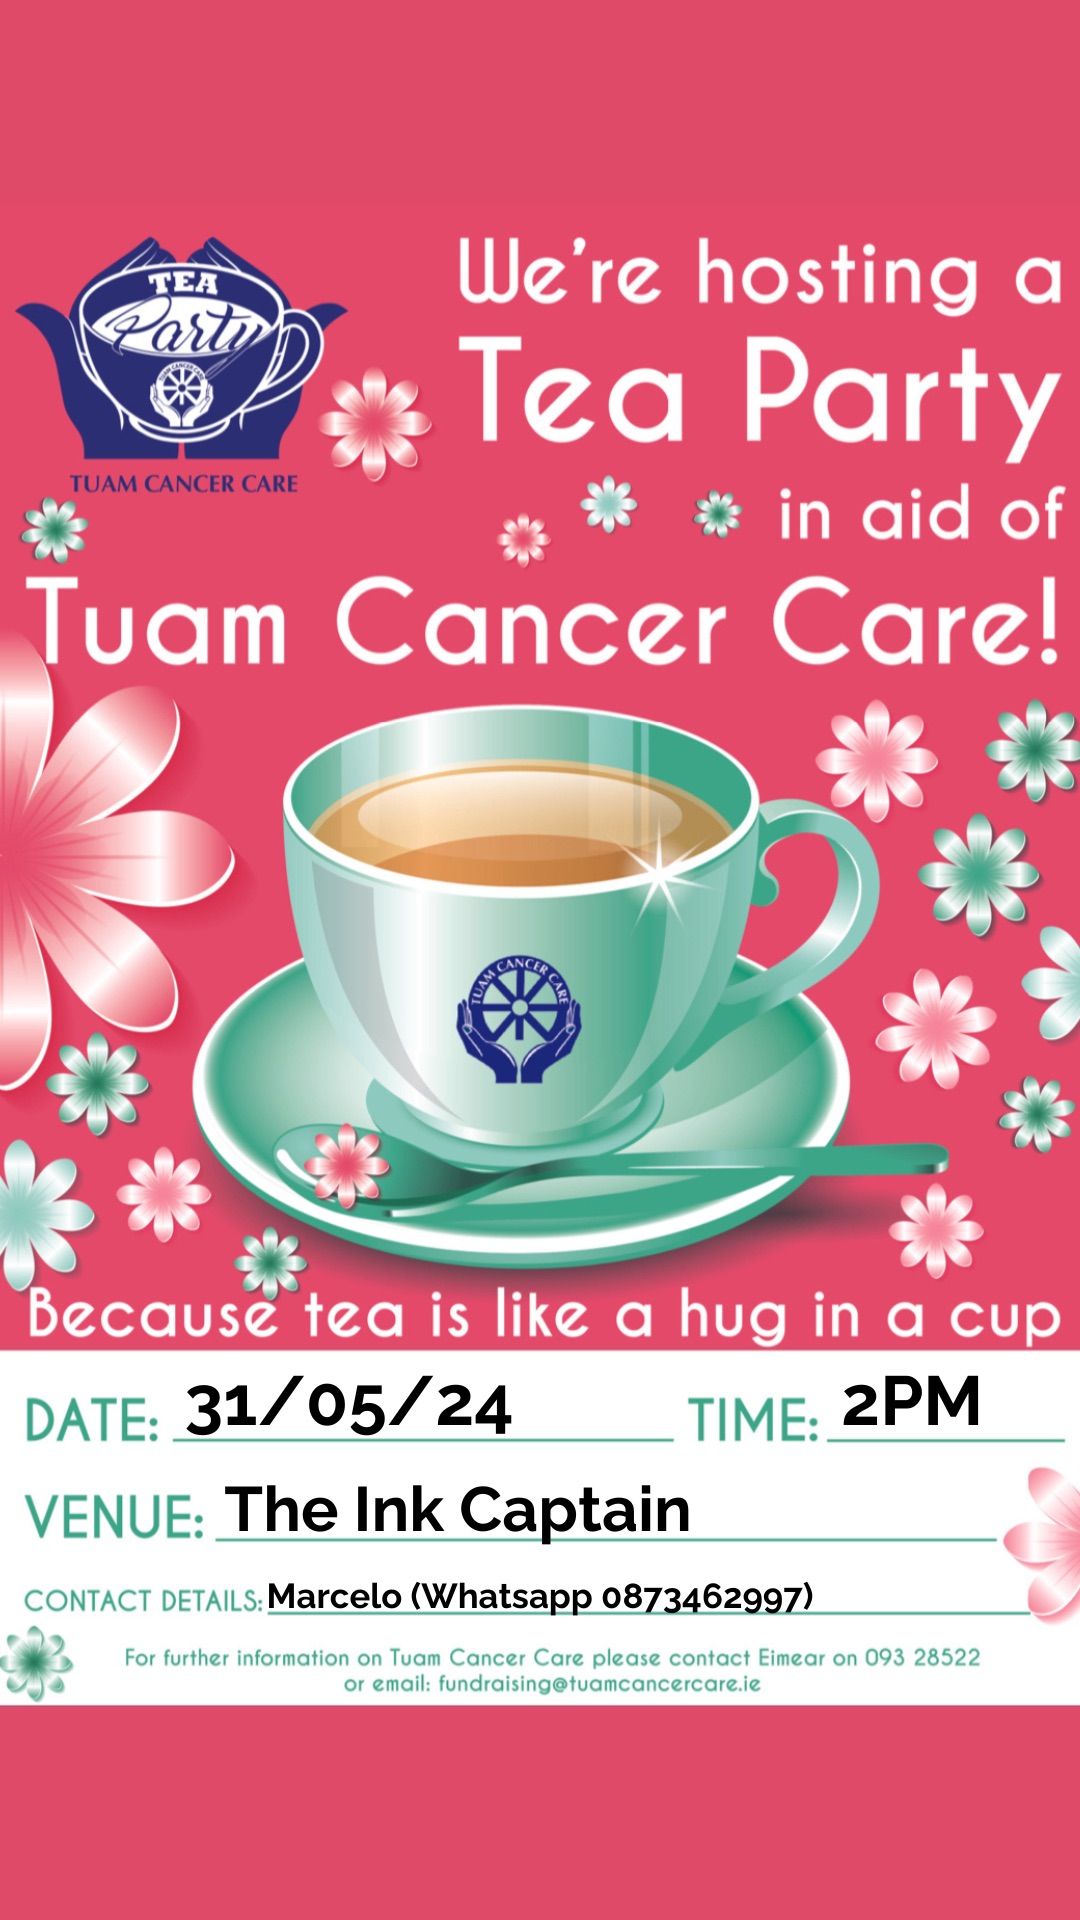 Tea party - Tuam Cancer Care